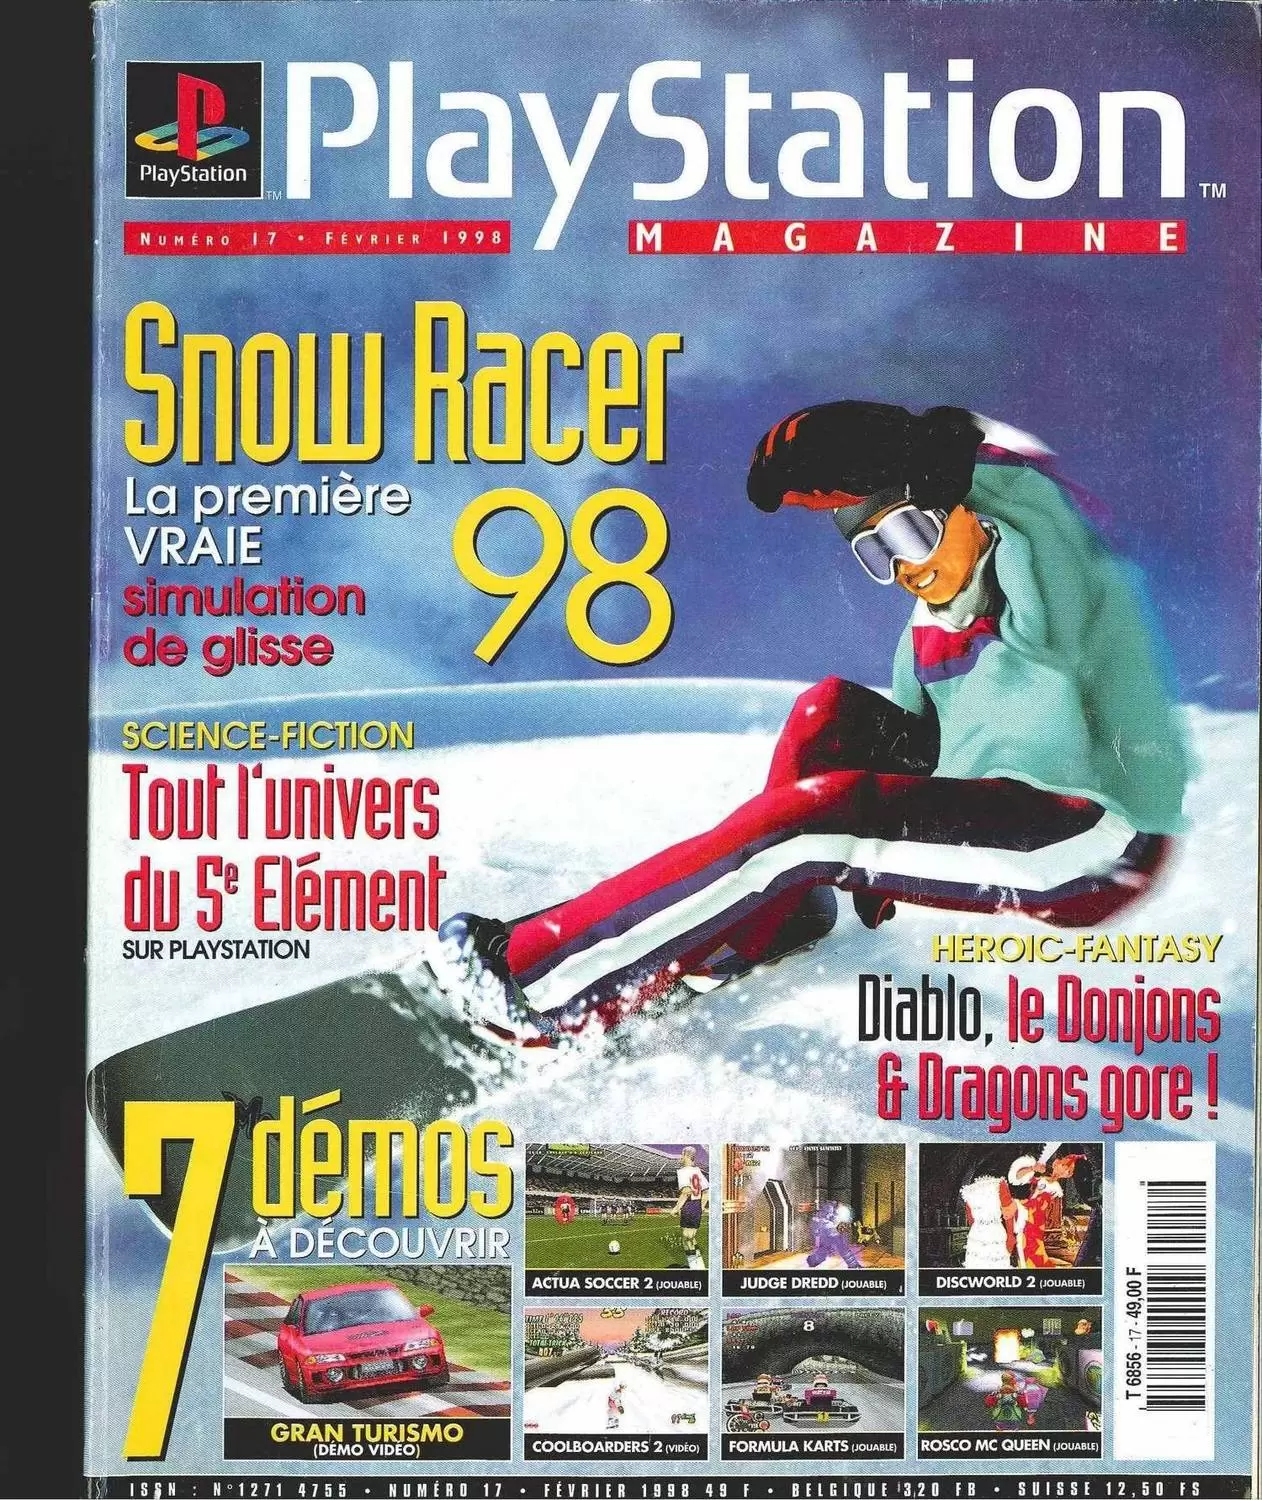 Playstation Magazine - Playstation Magazine #17